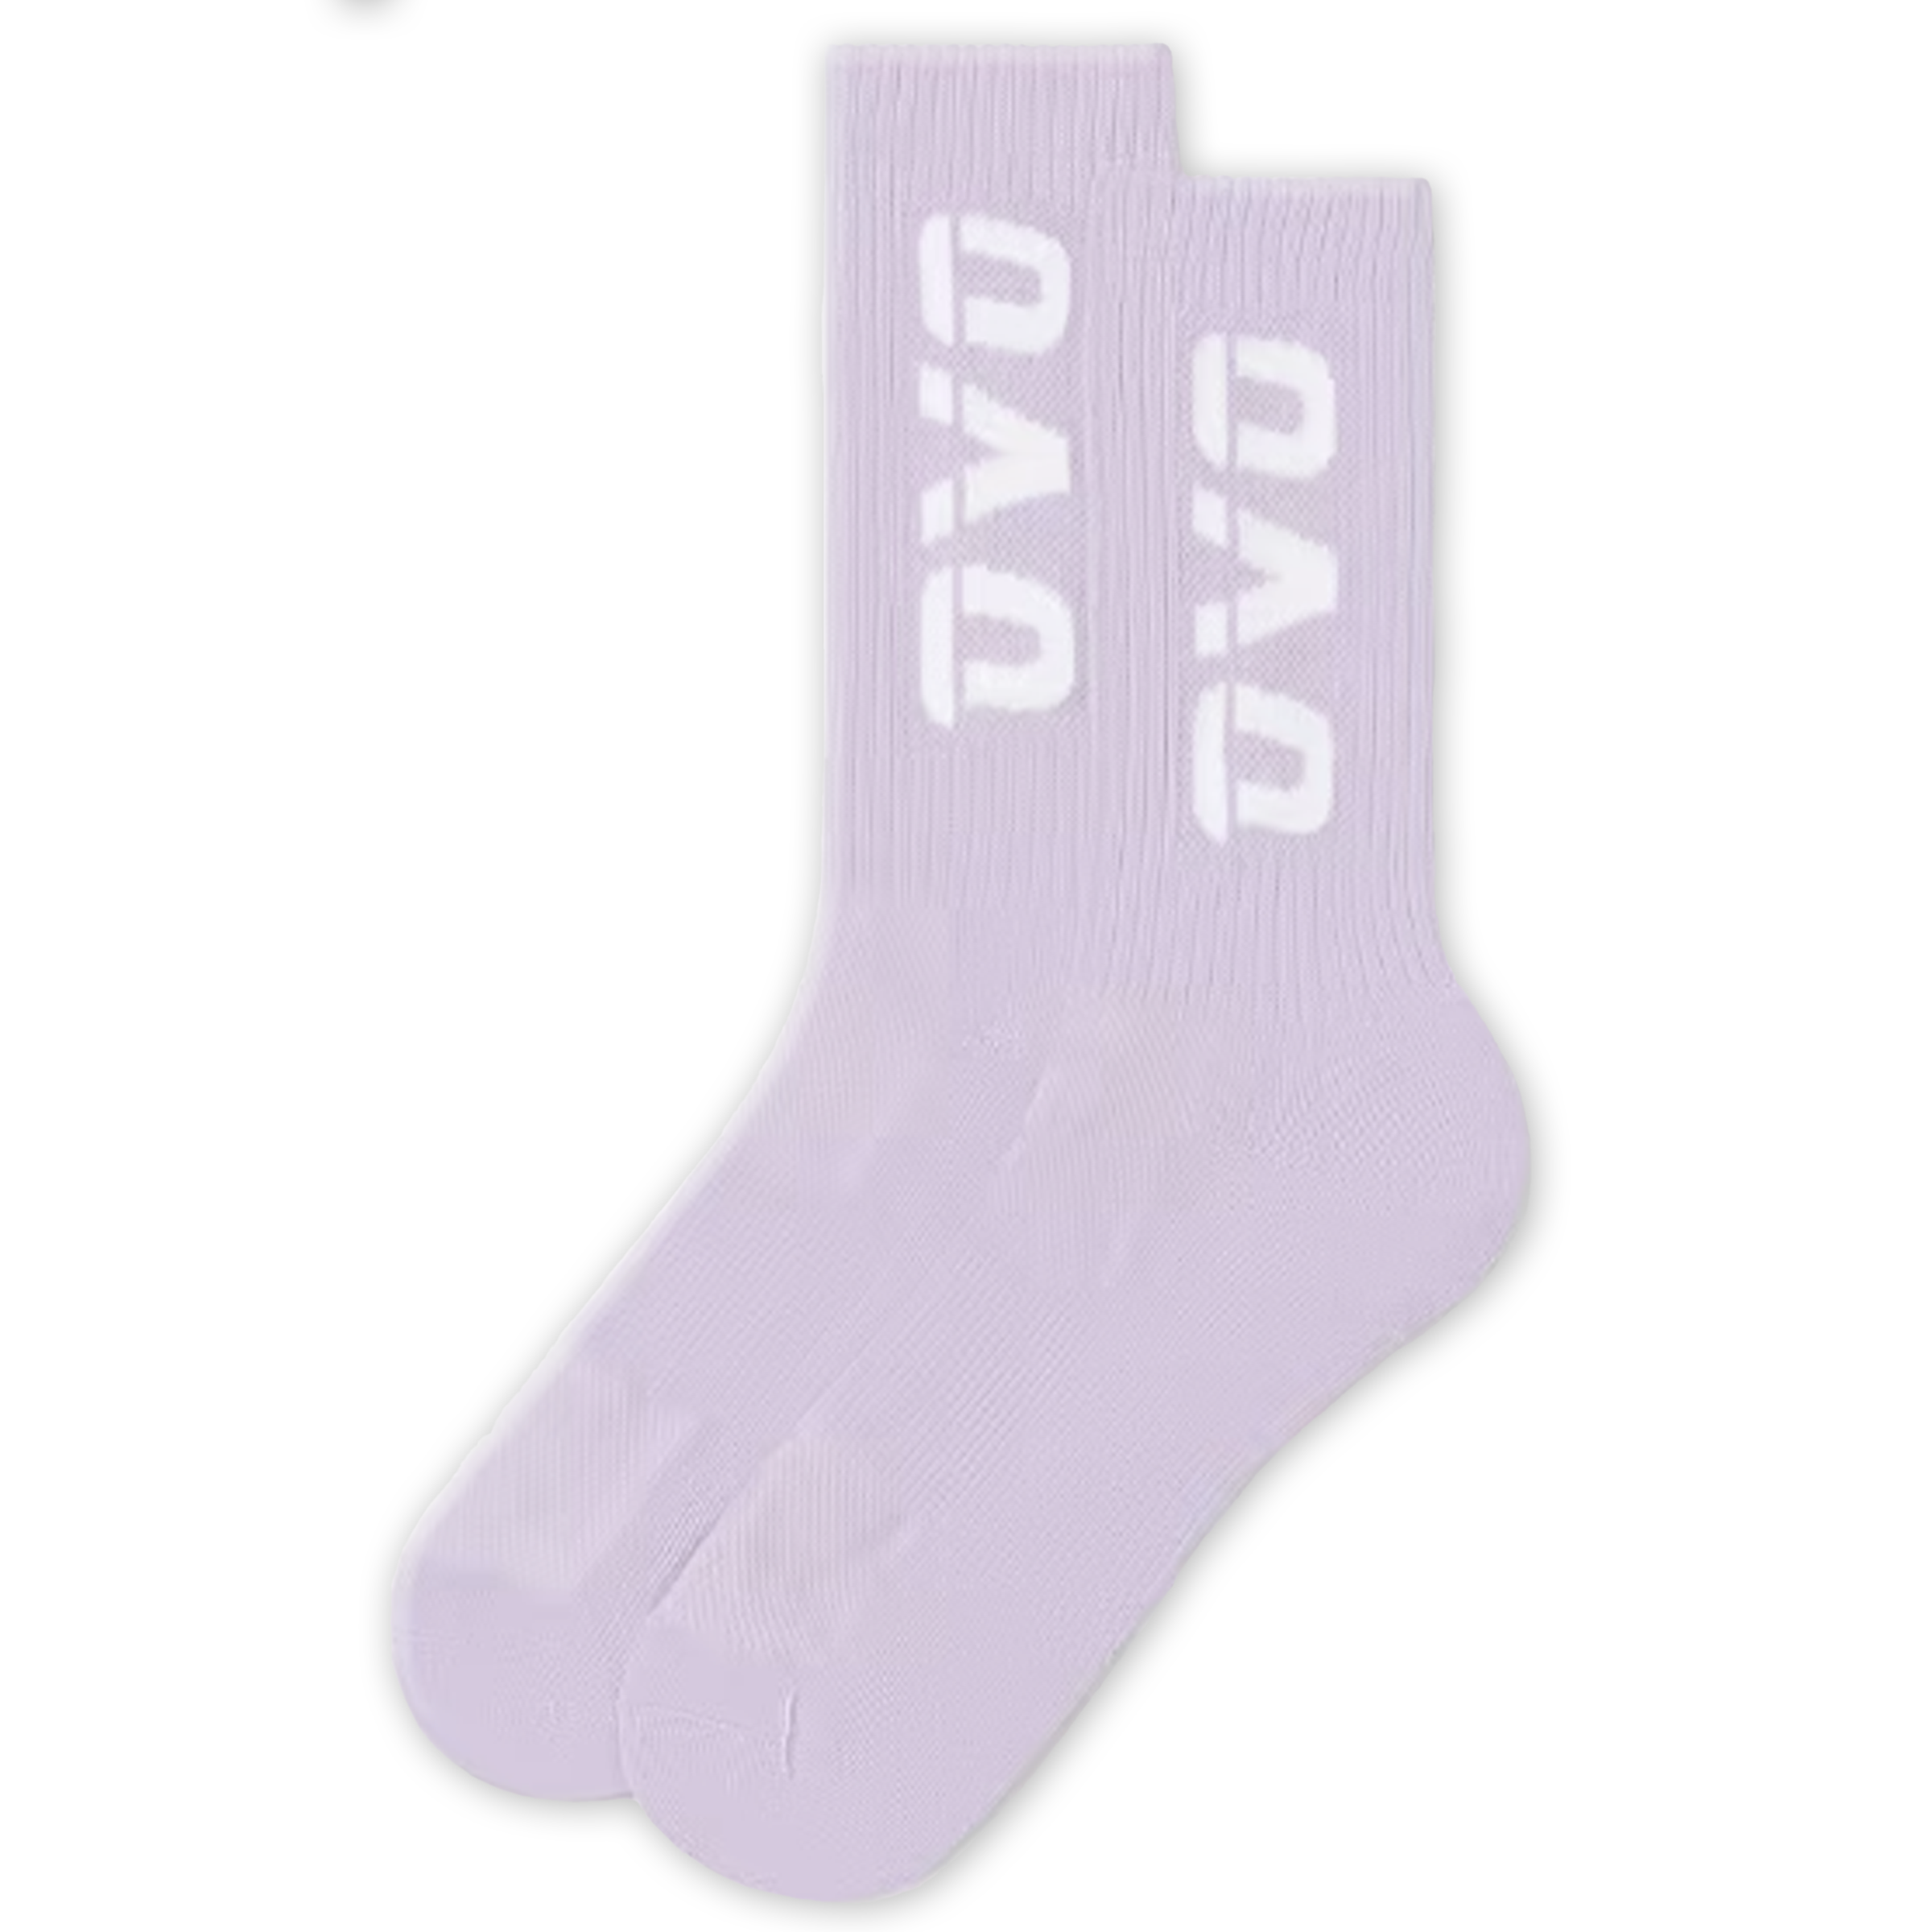 OVO "Sport" Socks